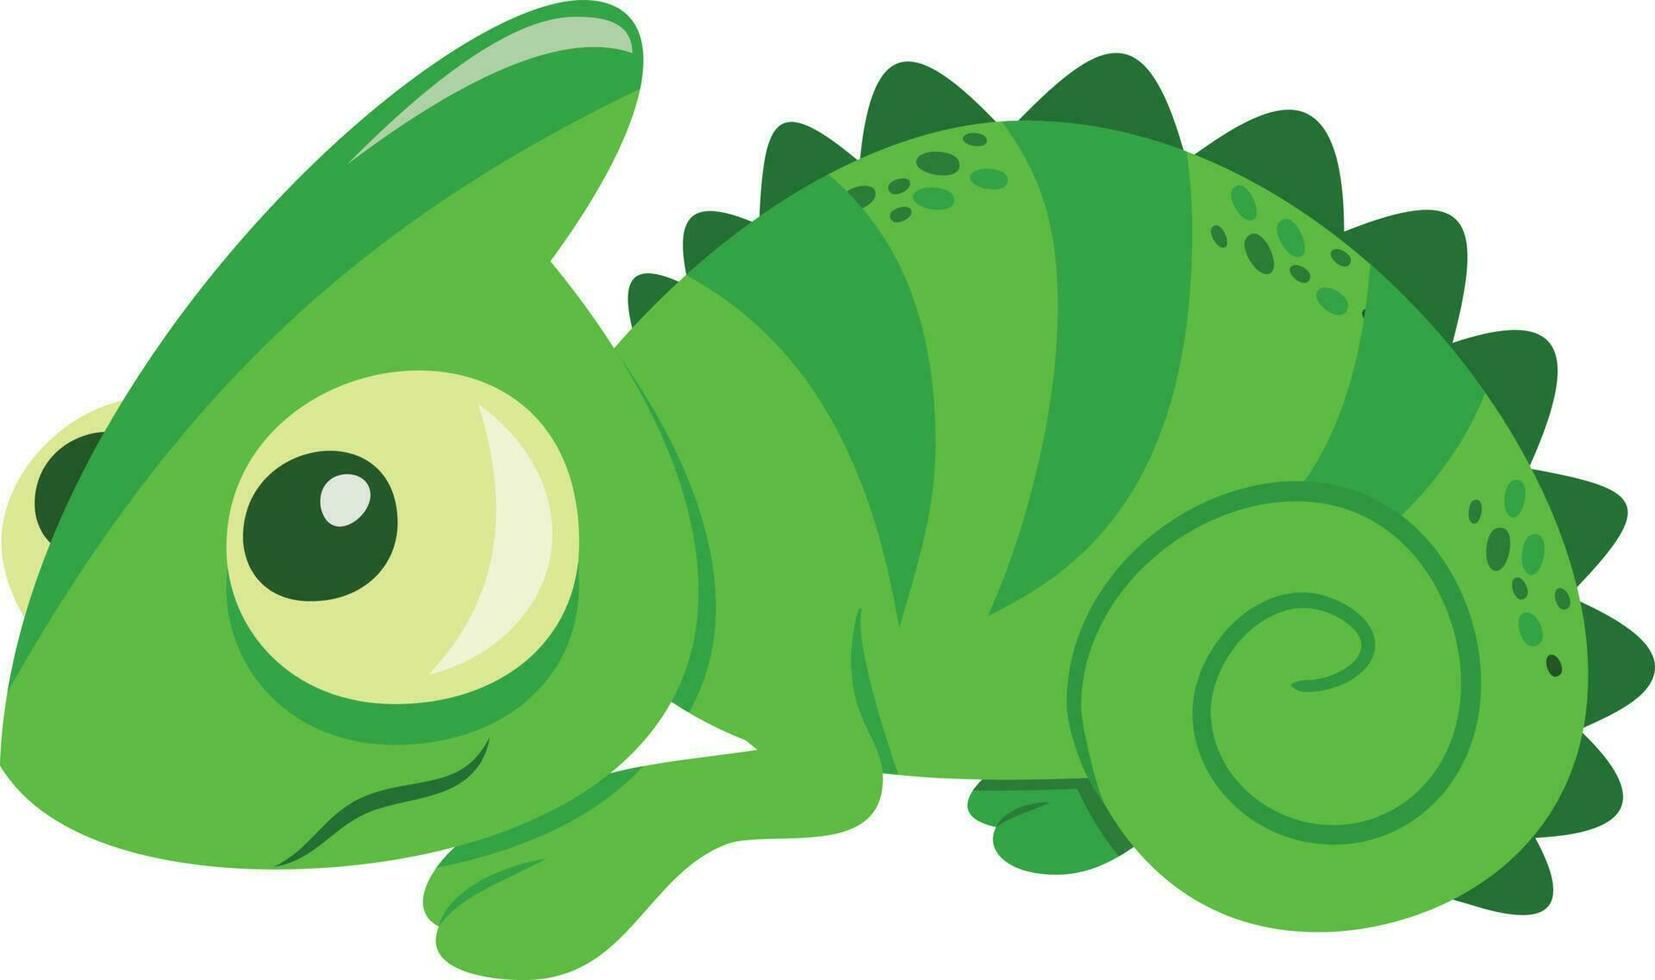 Cute Cartoon Chameleon Lizard vector